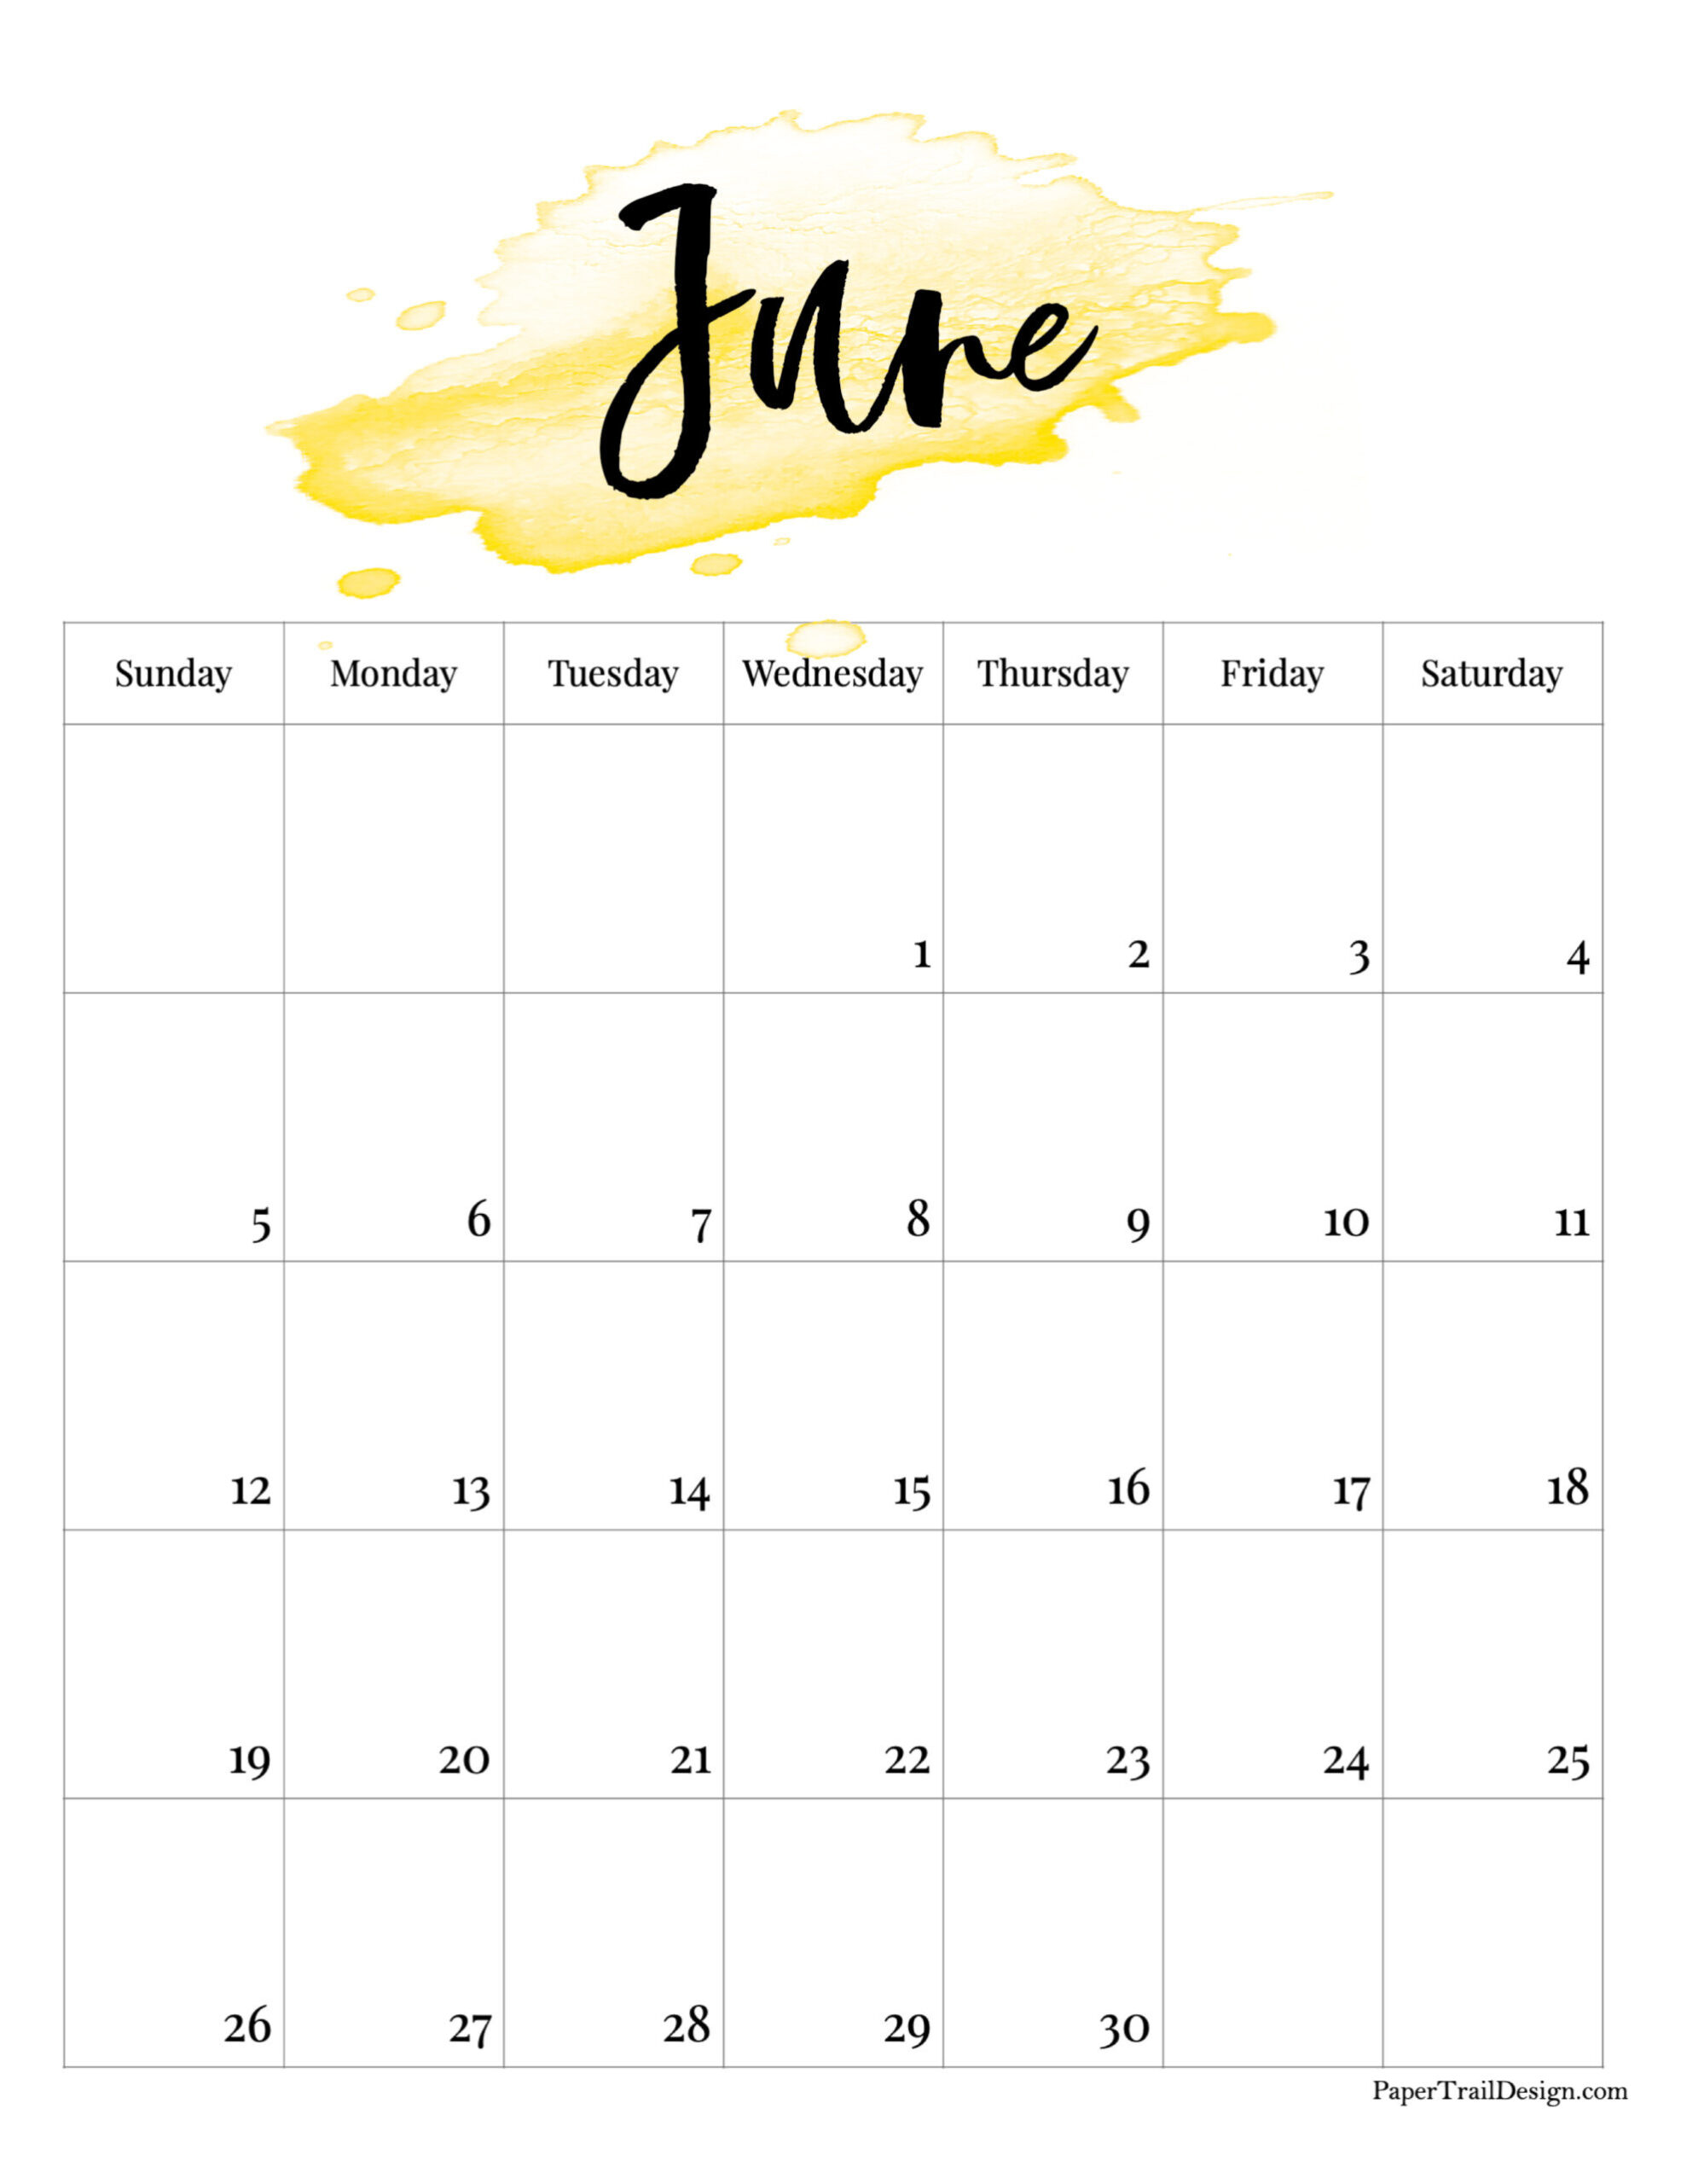 2022 Printable Calendar - Watercolor | Paper Trail Design  June Printable Calendar 2022